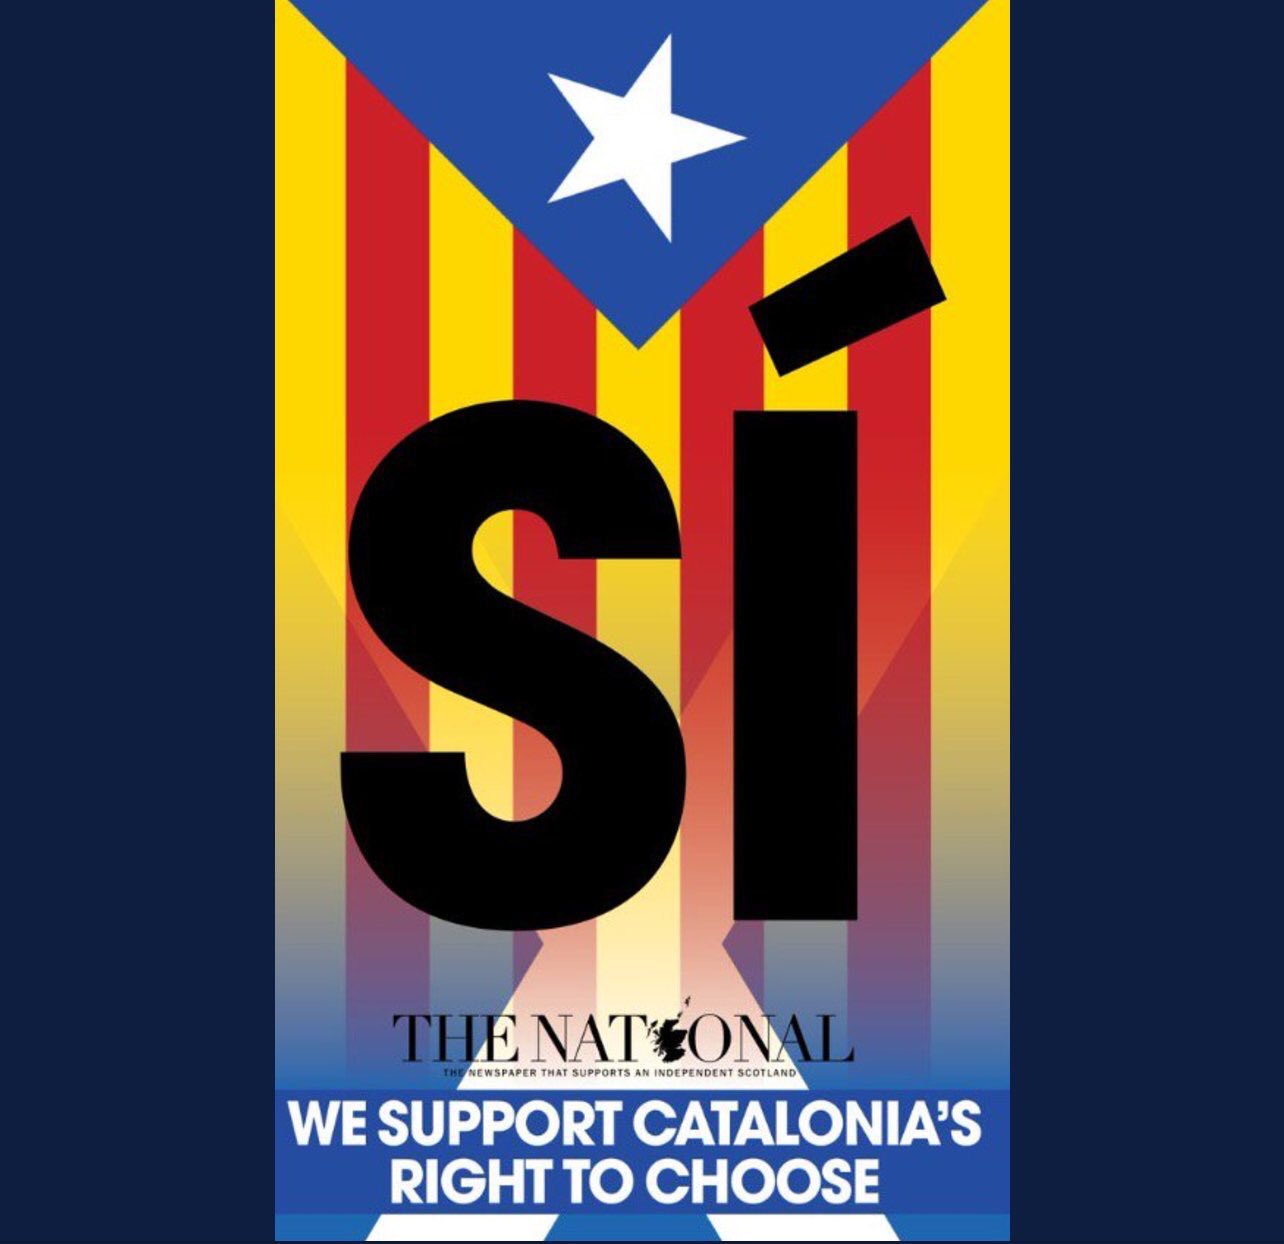 El póster de 'The National' para solidarizarse con Catalunya